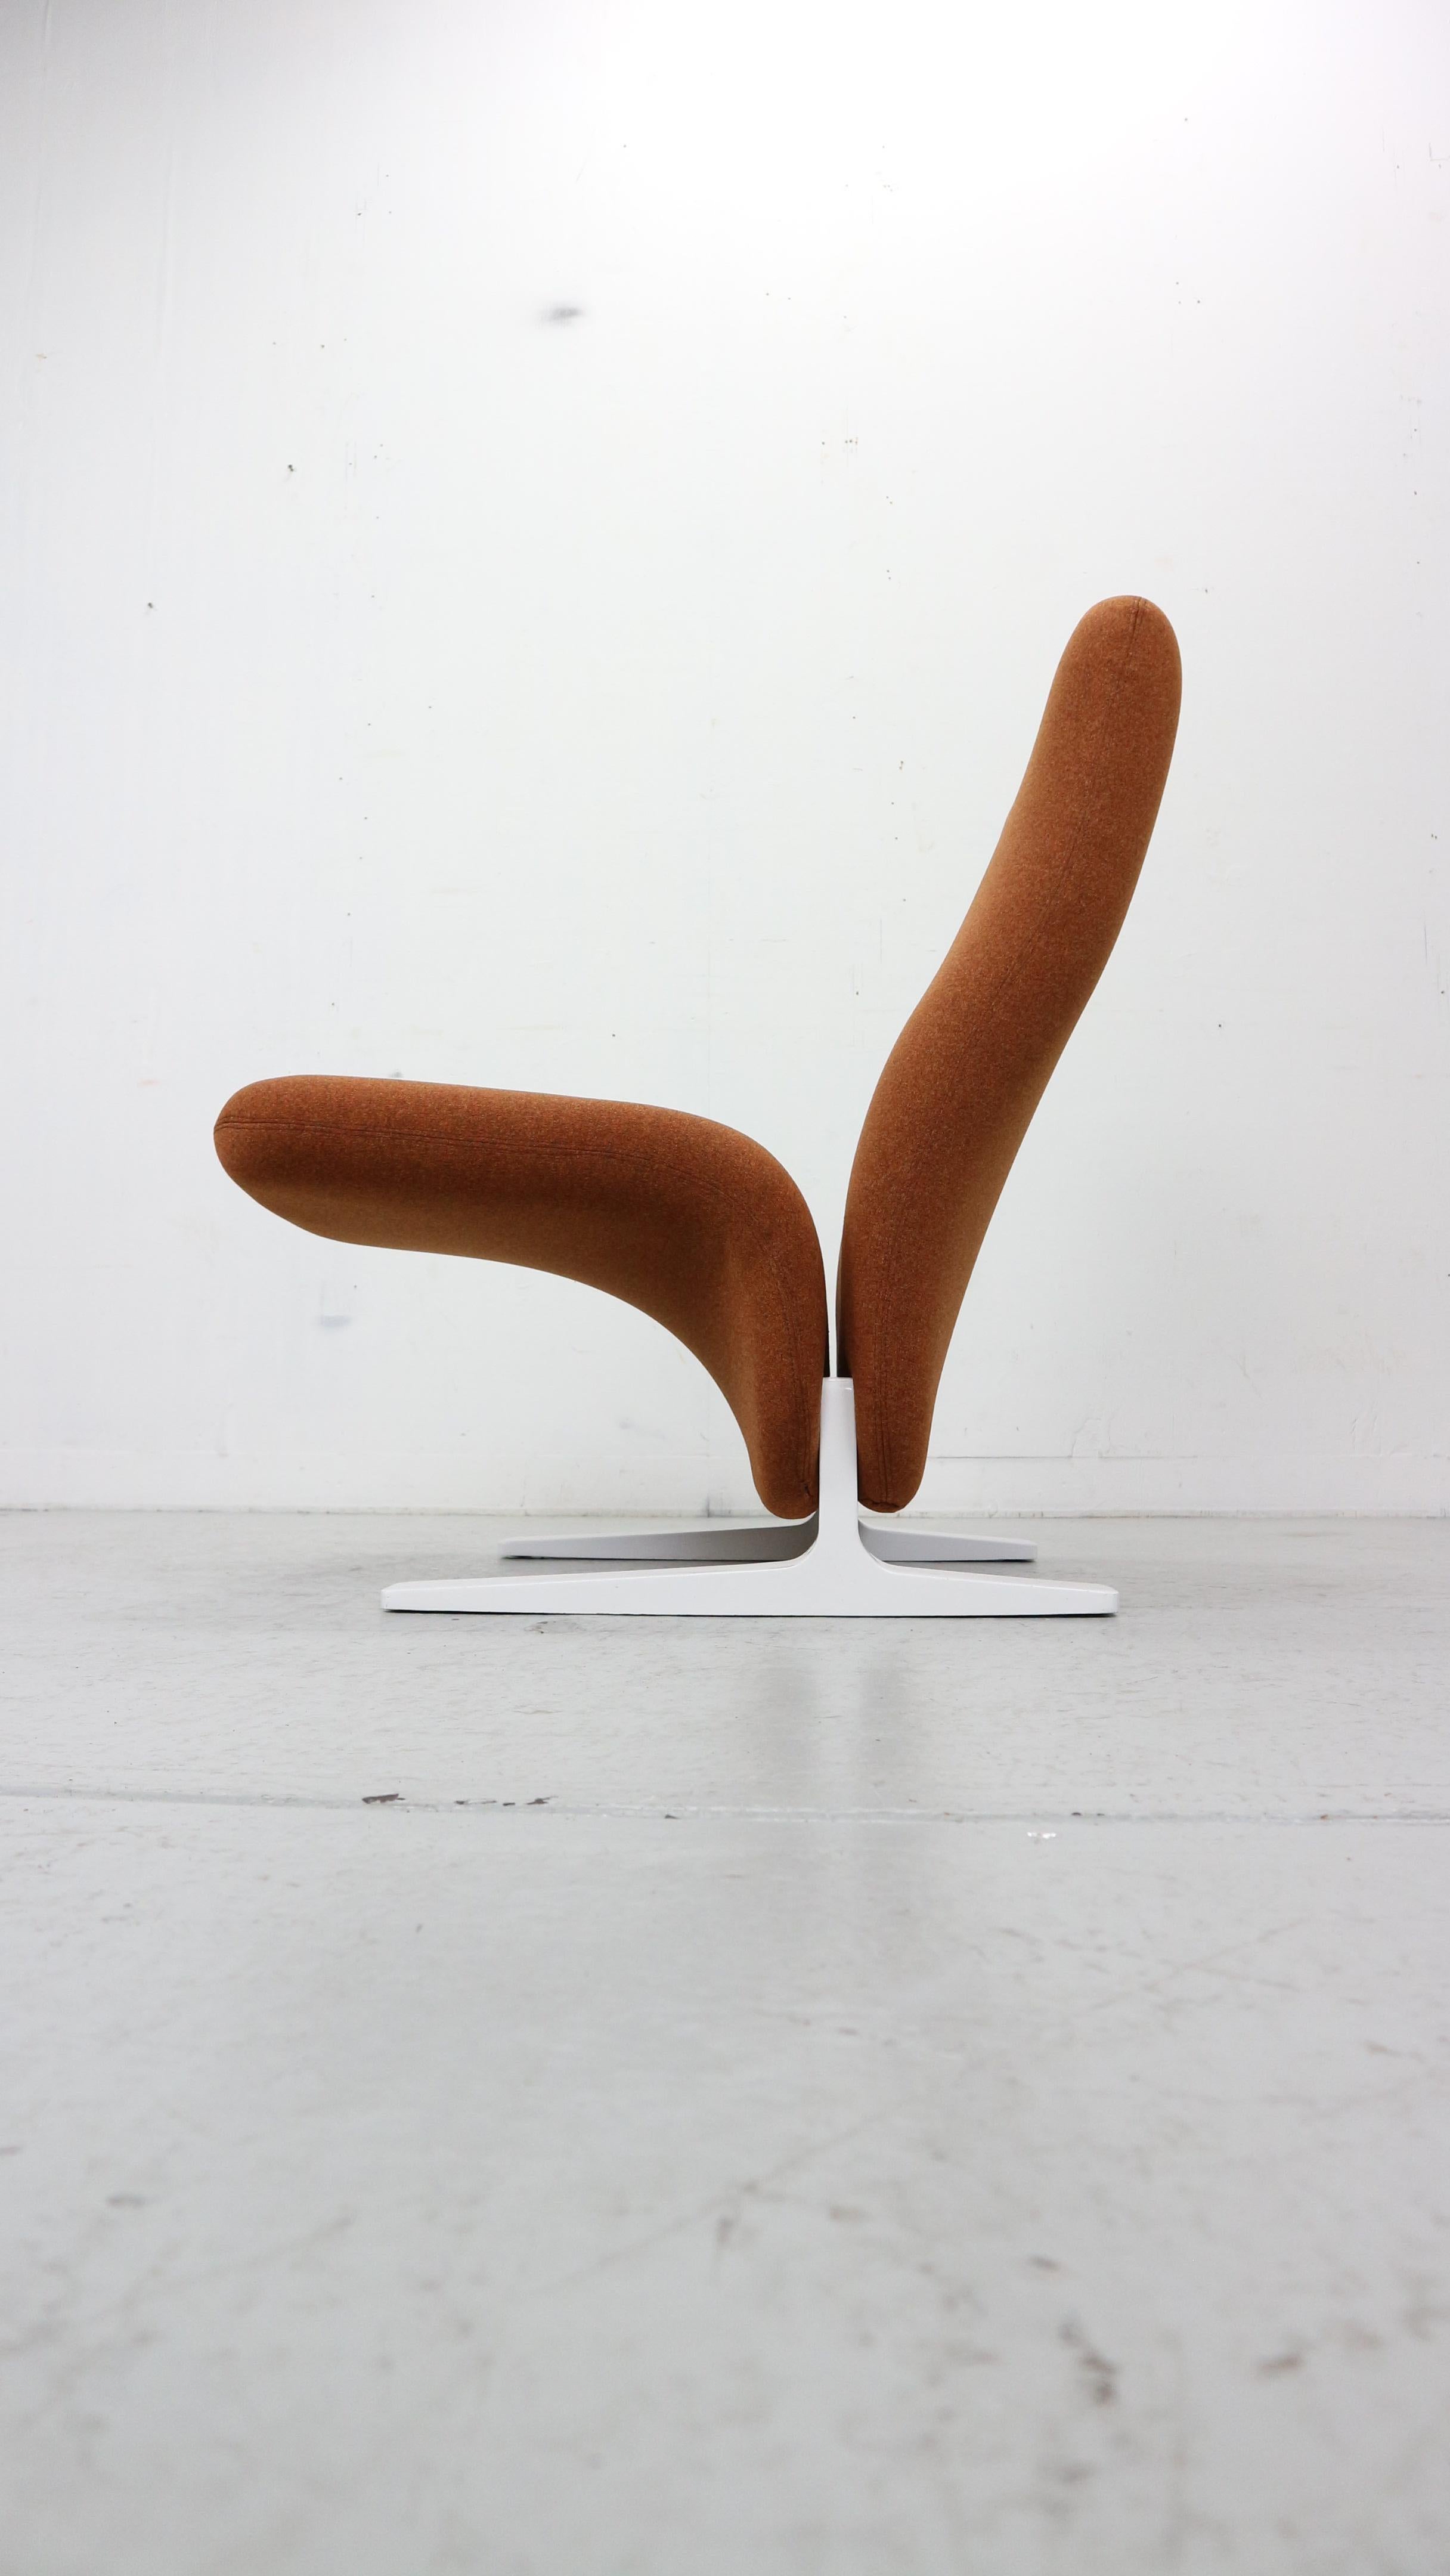 Le Concorde ou F780 est une chaise longue emblématique conçue par le designer français Pierre Paulin pour le fabricant de meubles Artifort. Cette chaise emblématique porte le nom de l'avion français Concorde qu'il a également conçu, cette chaise